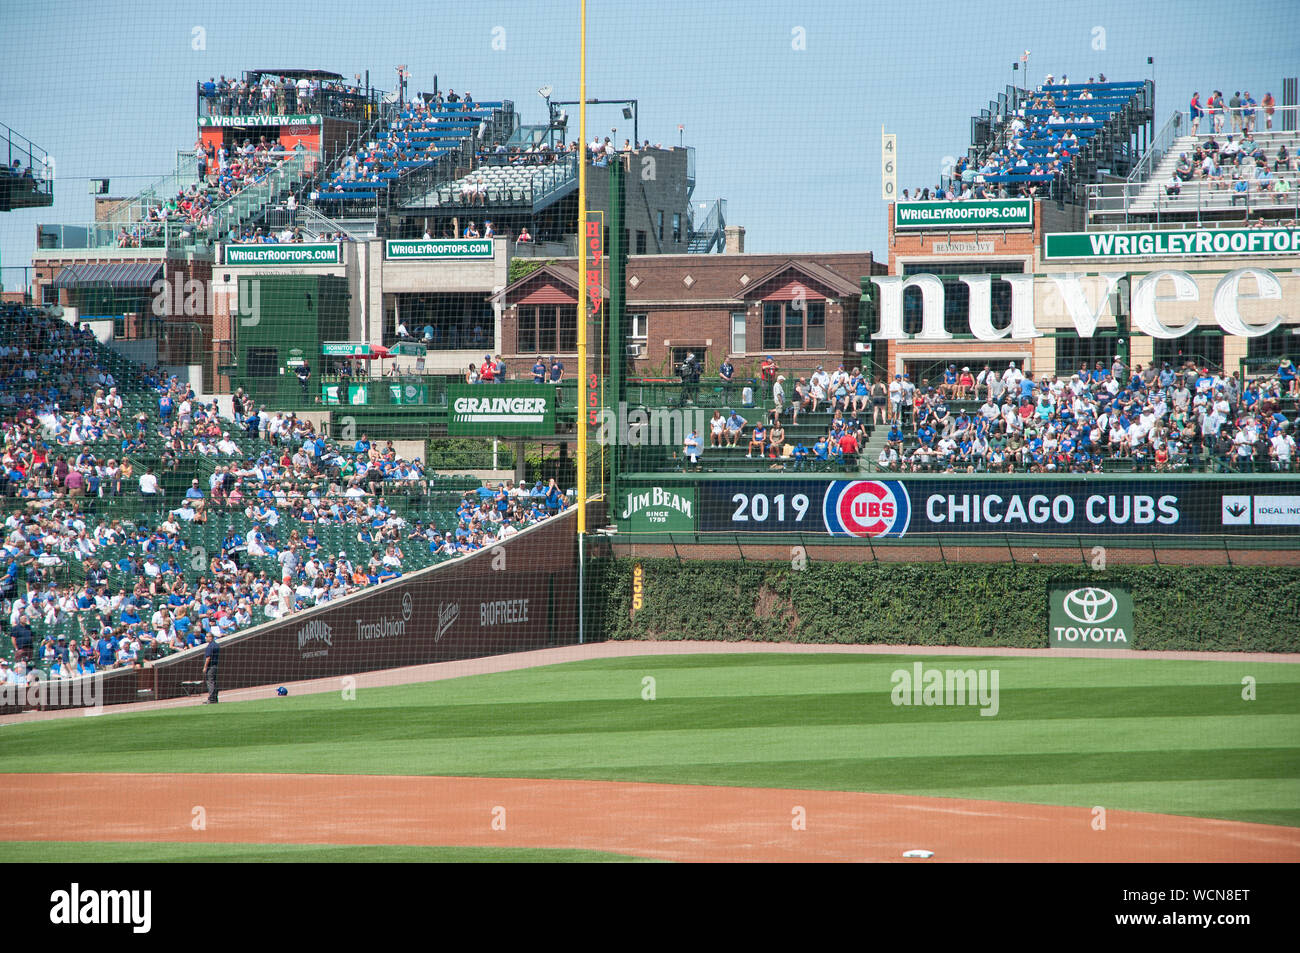 L'équipe de la ligue majeure de baseball de Chicago les Cubs de Chicago et Wrigley Field. Oursons jouaient les Giants de San Francisco et a gagné le match 1-0/ Banque D'Images